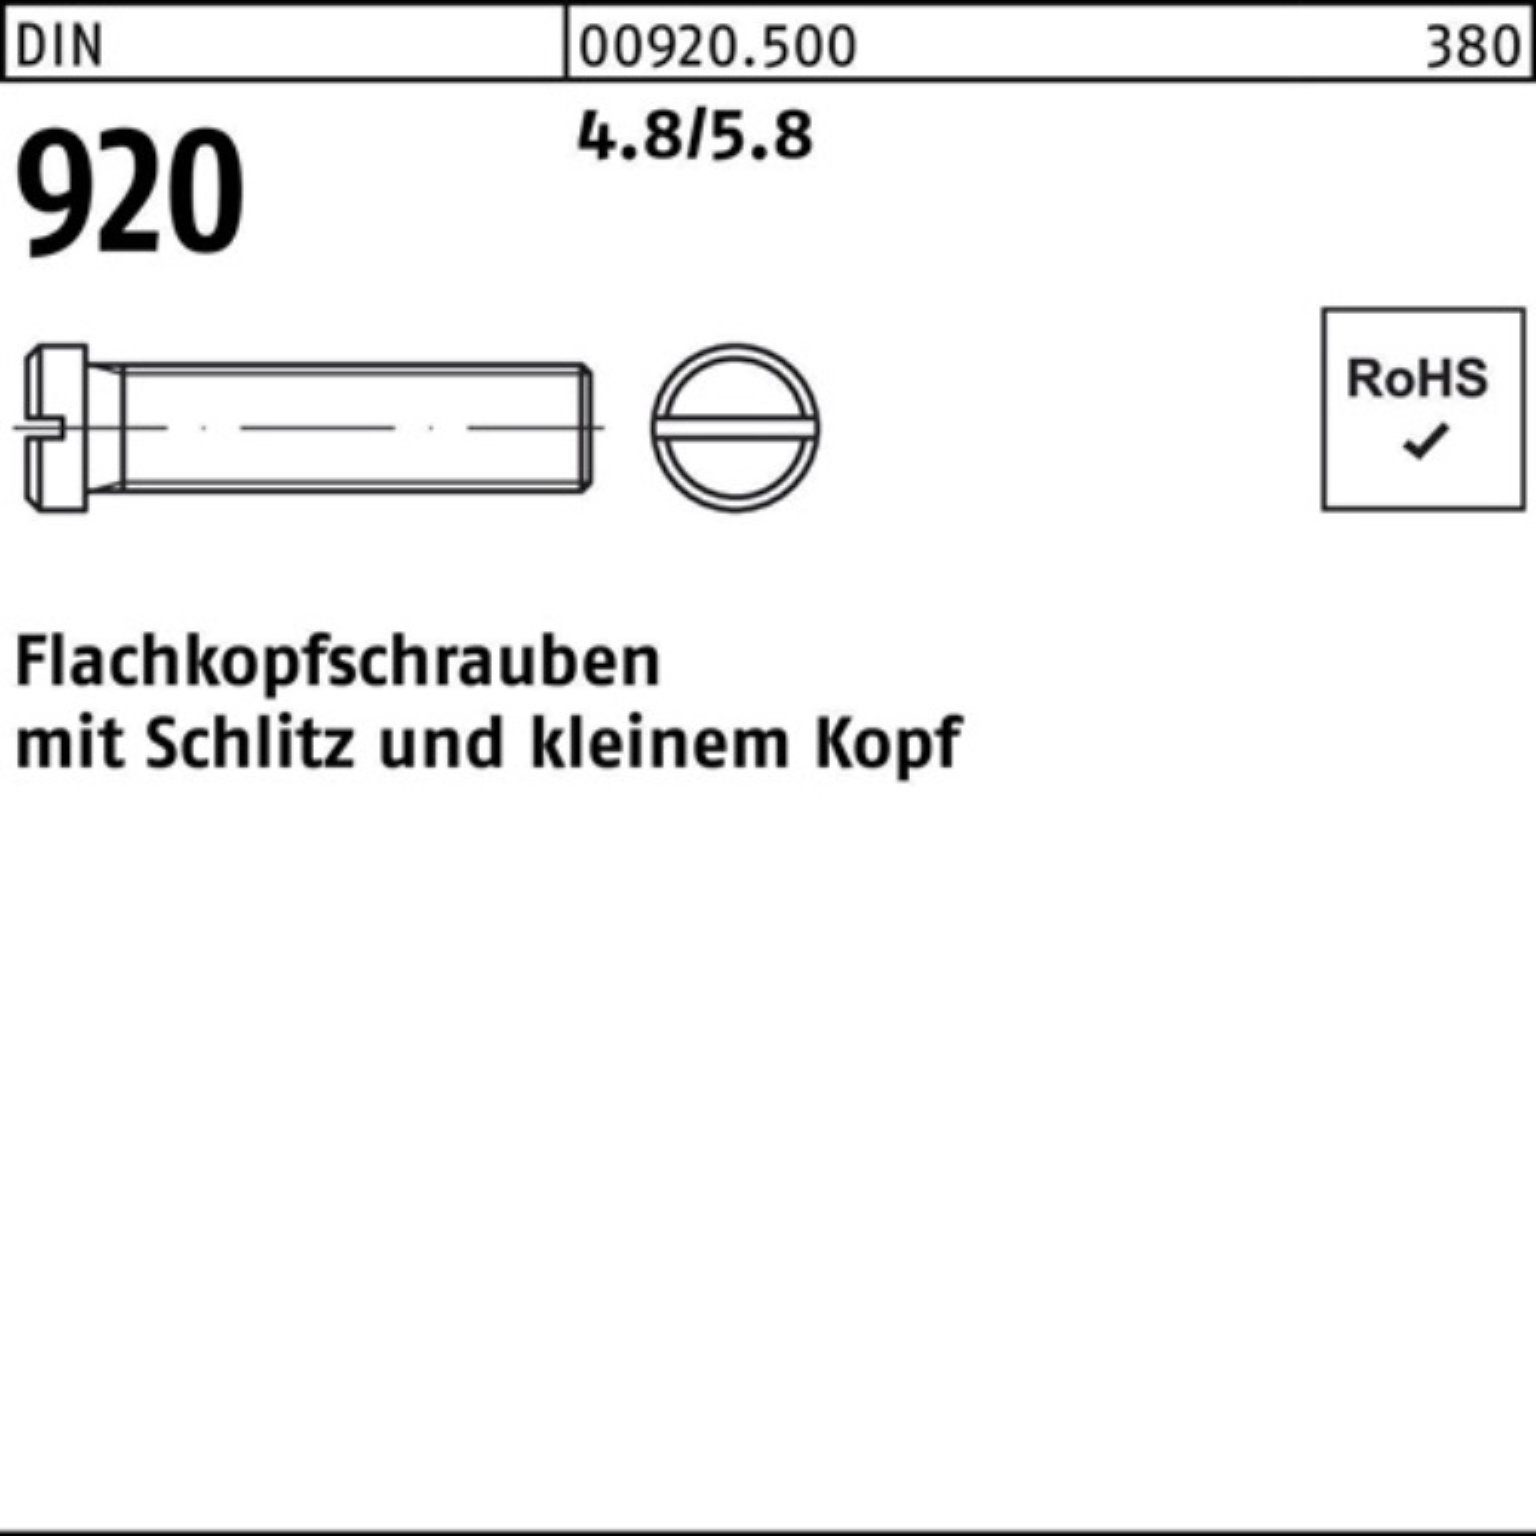 Reyher Schraube 100er Pack Flachkopfschraube DIN 920 Schlitz M5x 10 4.8/5.8 100 Stück